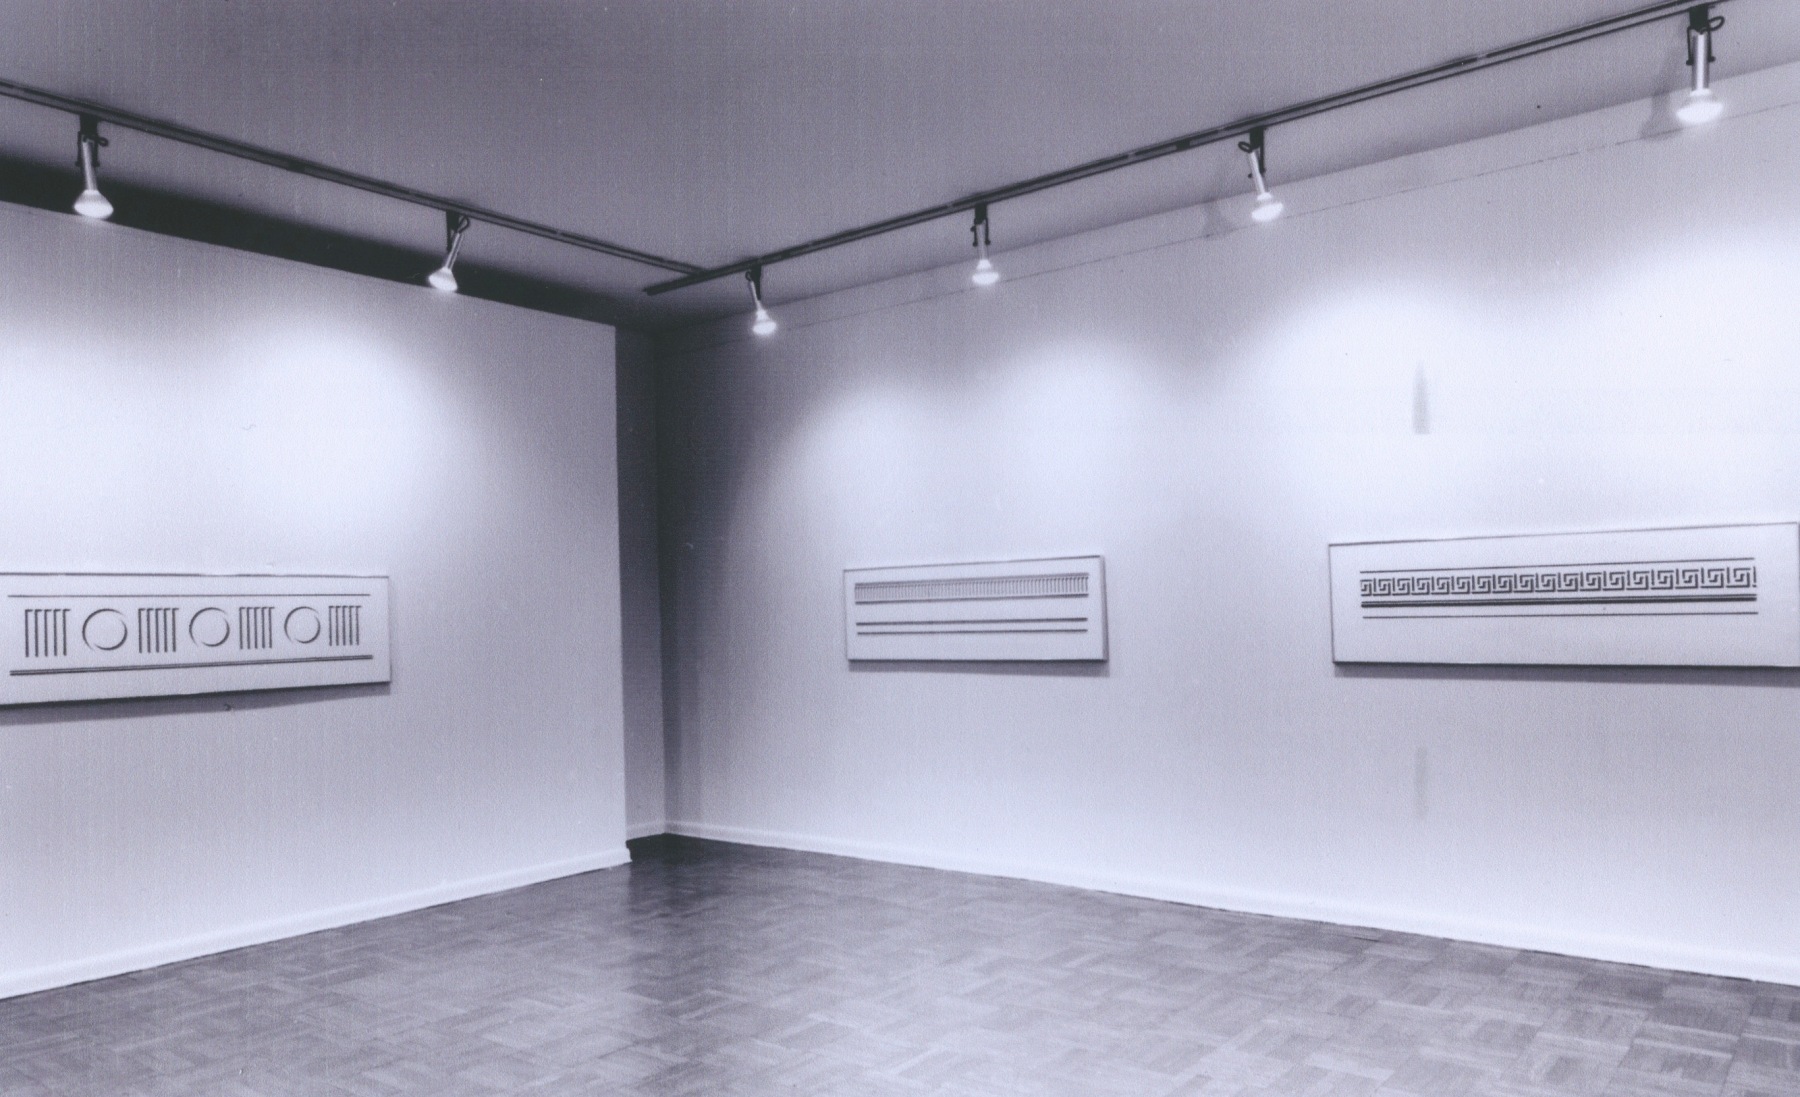 Installation view, Roy Lichtenstein Drawings, 4 EAST 77